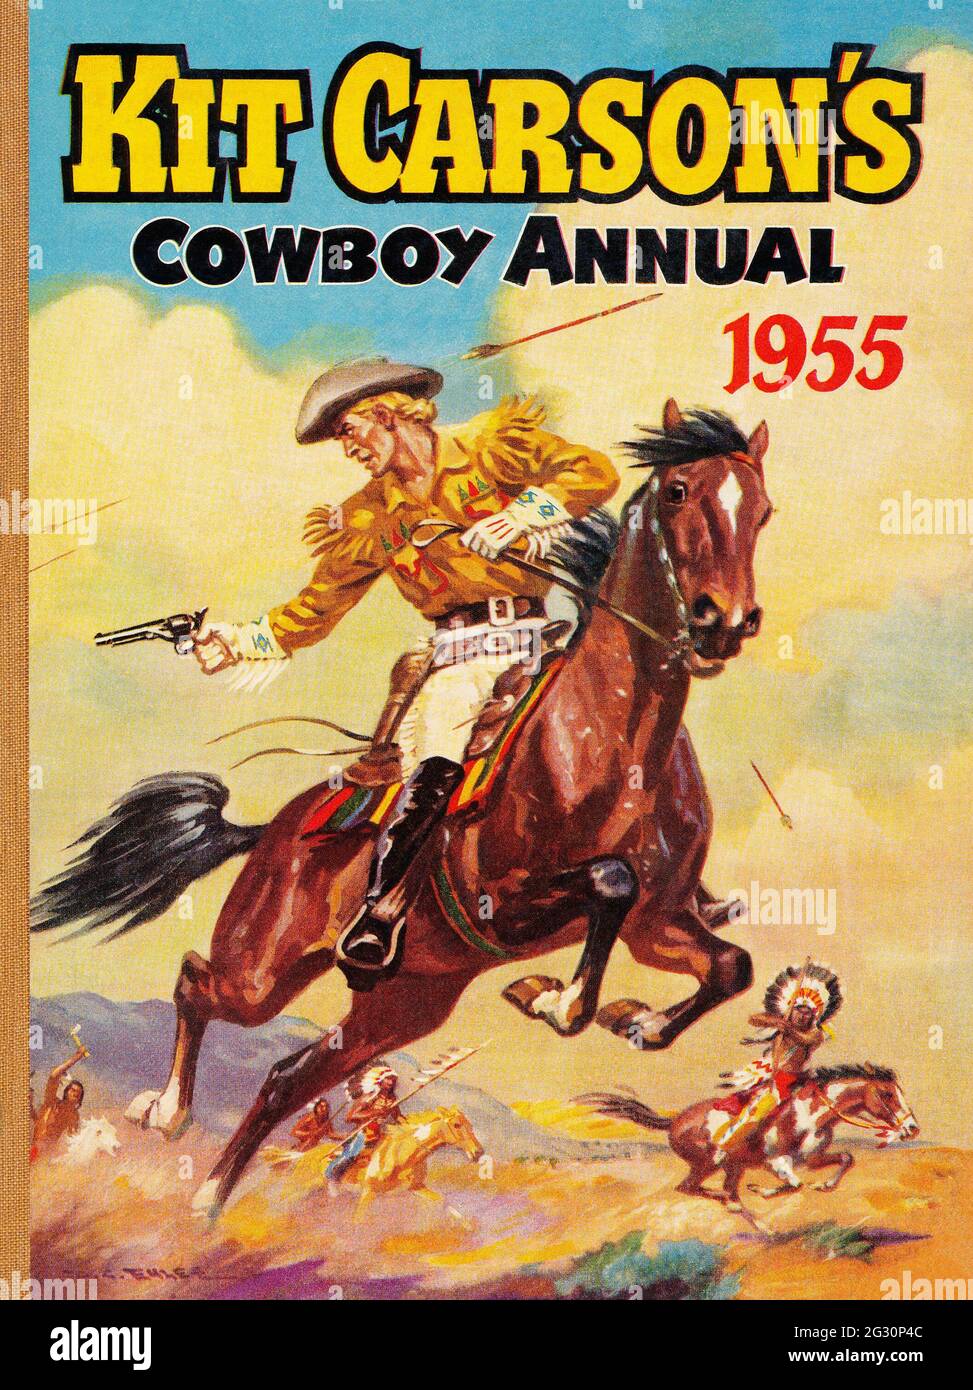 Vintage-Kinderbuchcover von Kit Carson's Cowboy Annual 1955, herausgegeben von Amalgamated Press. Illustration von D.C. Eyles. Stockfoto